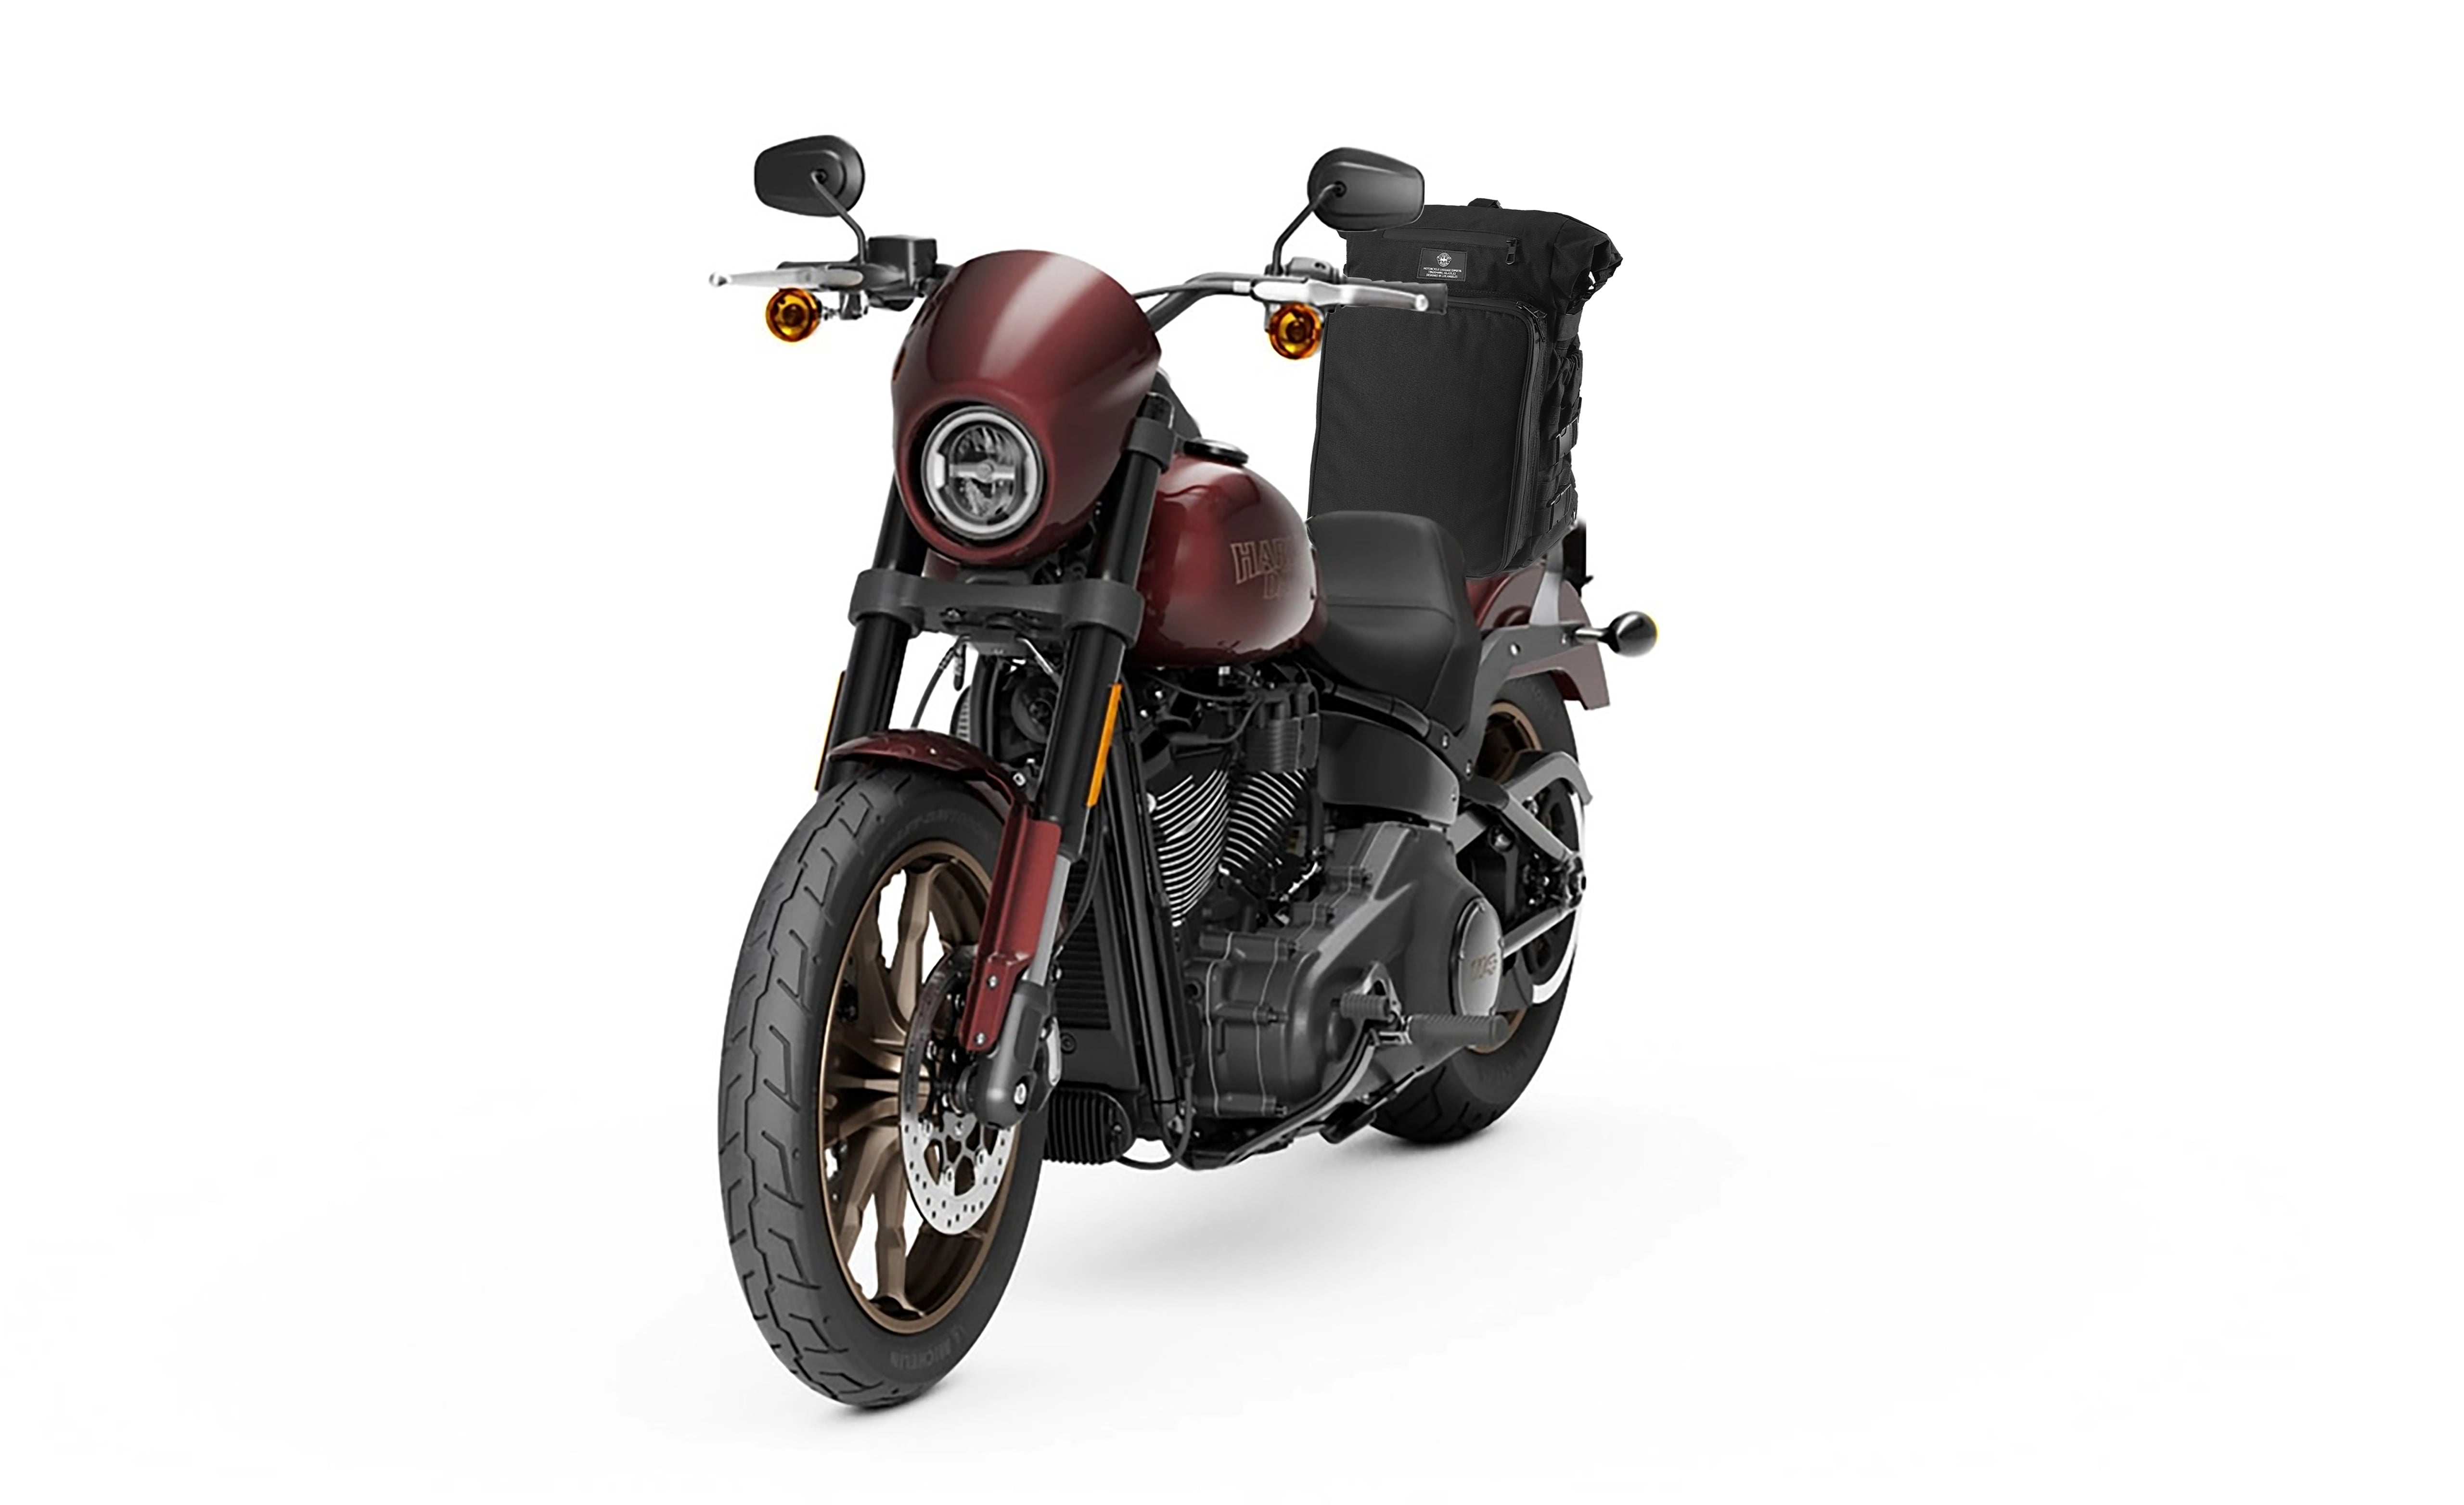 Viking Renegade XL Motorcycle Sissy Bar Bag for Harley Davidson Bag on Bike View @expand